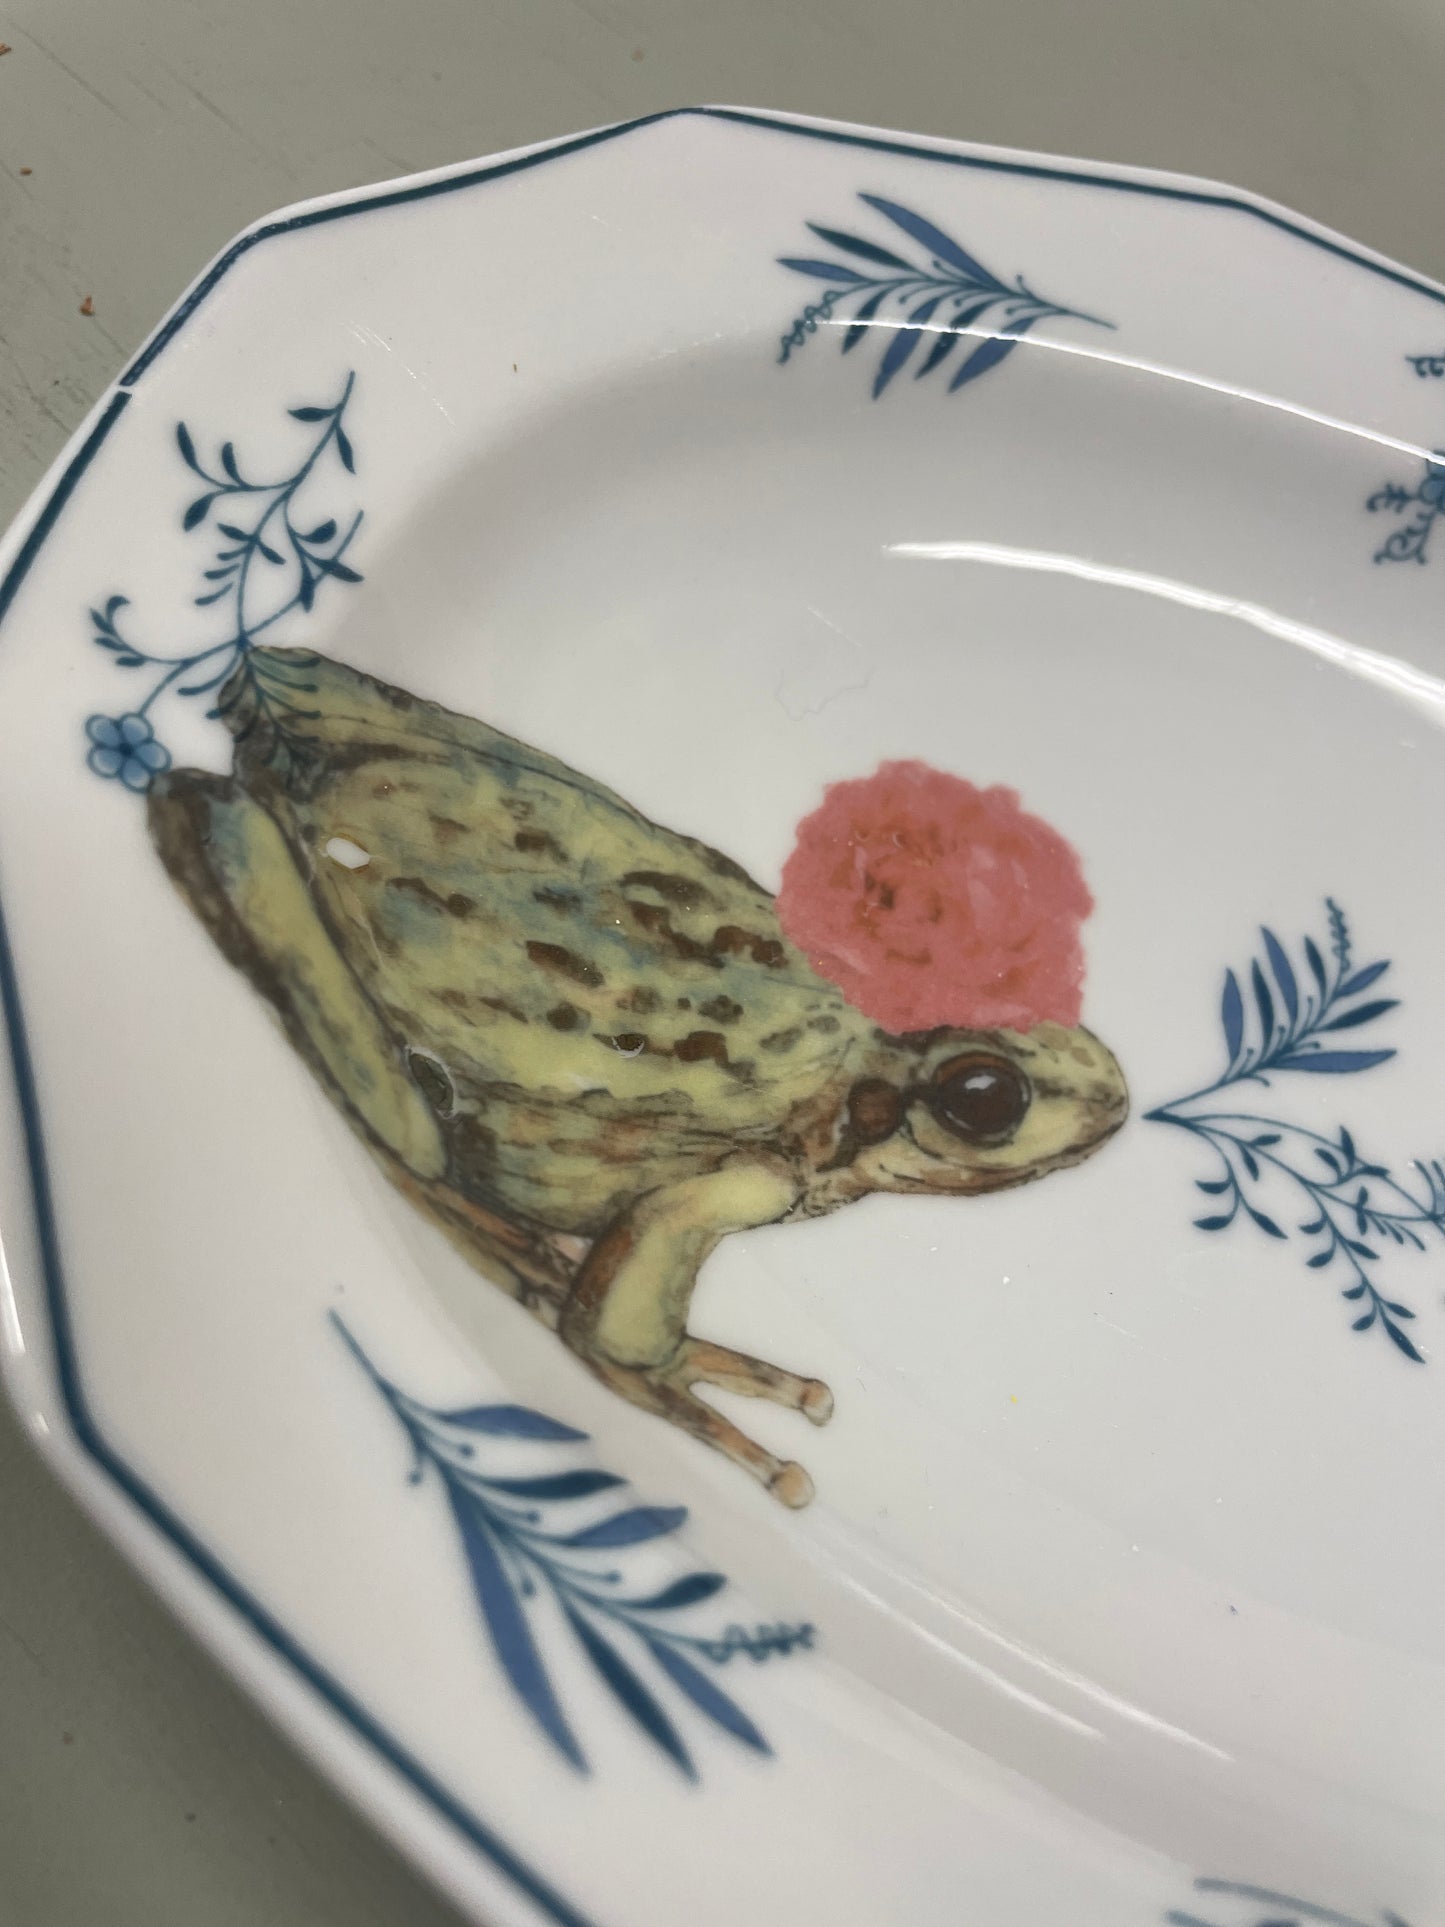 Gepimpte schaal - The frog is een prins